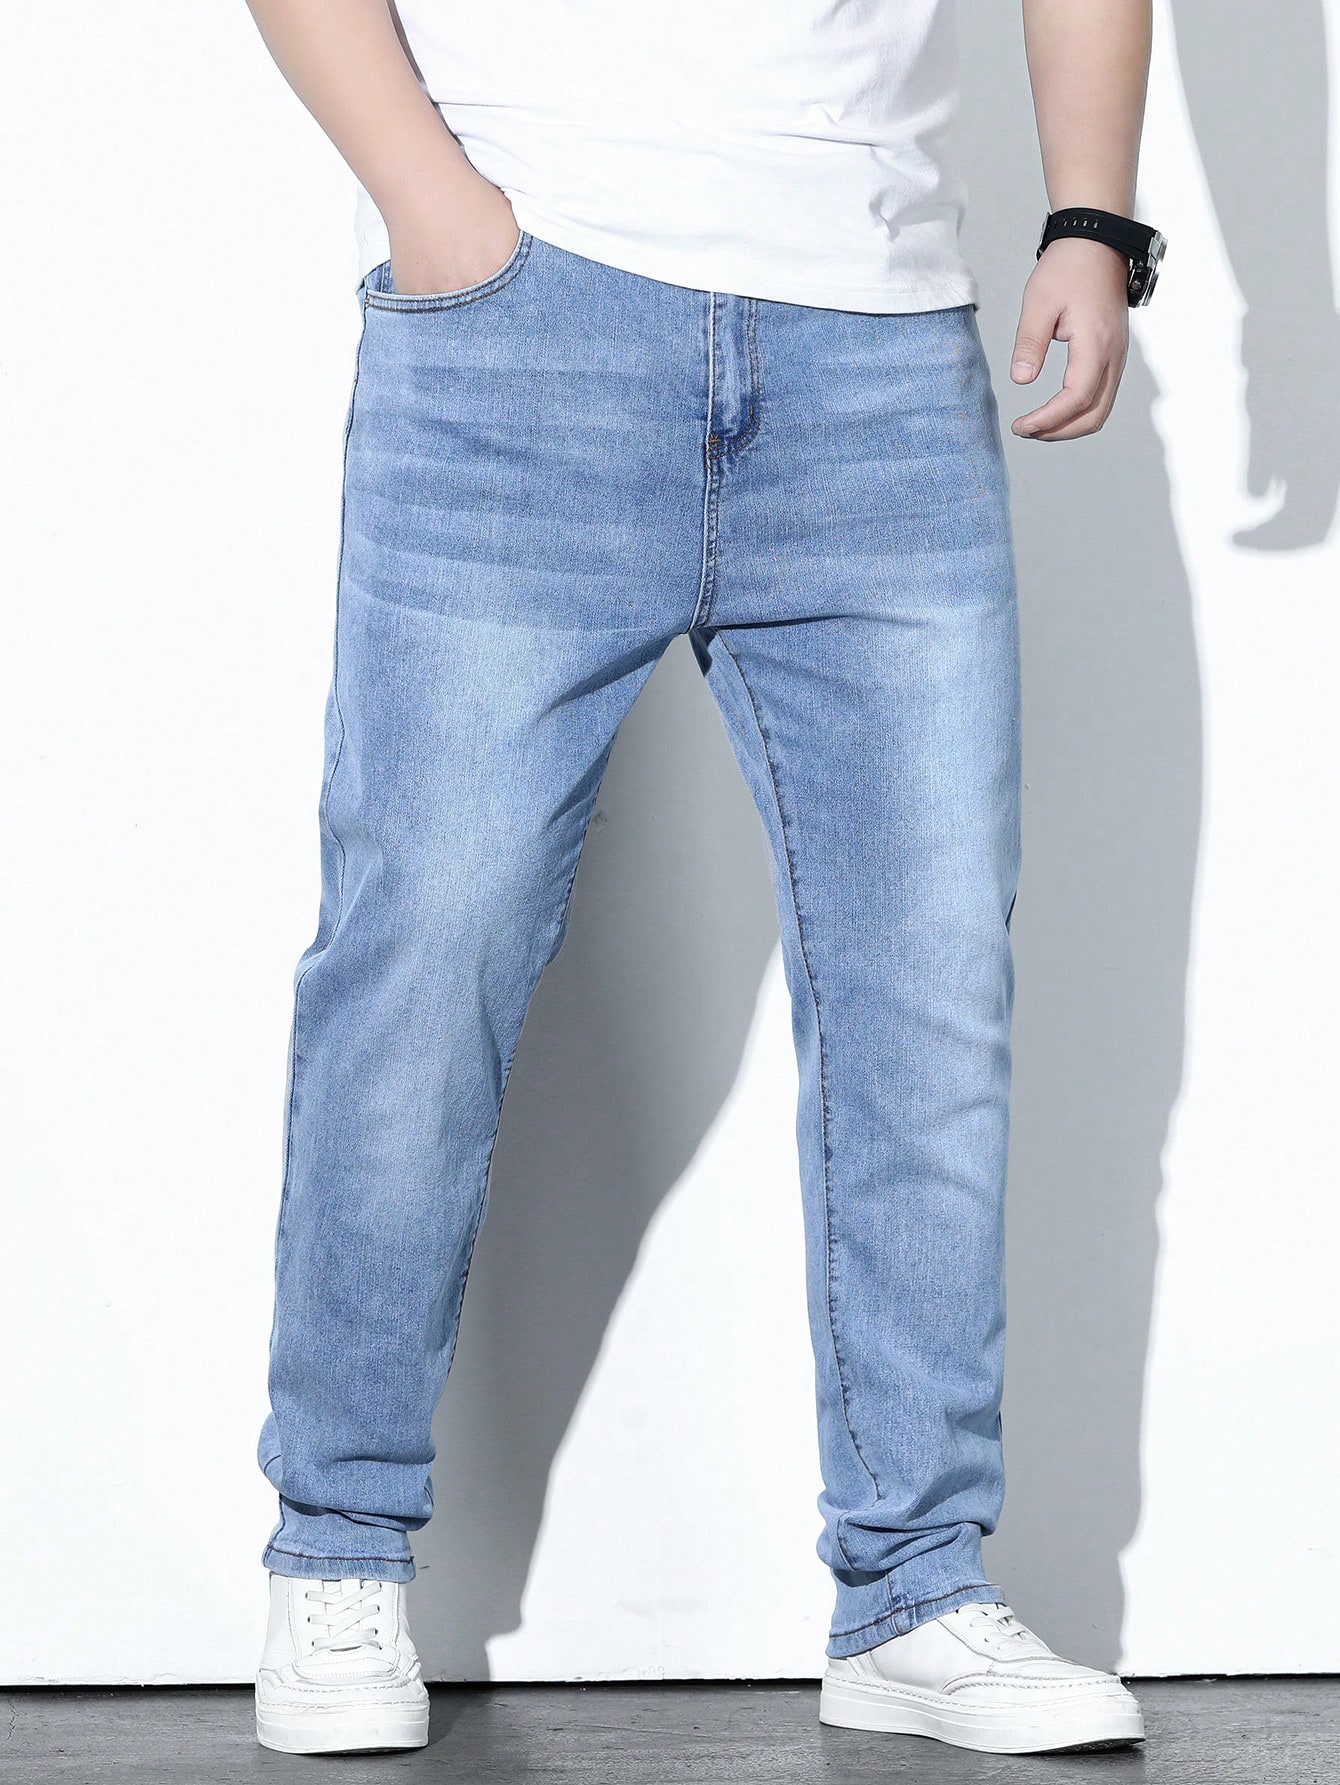 Мужские джинсы Manfinity LEGND больших размеров с застежкой-молнией и карманами, легкая стирка